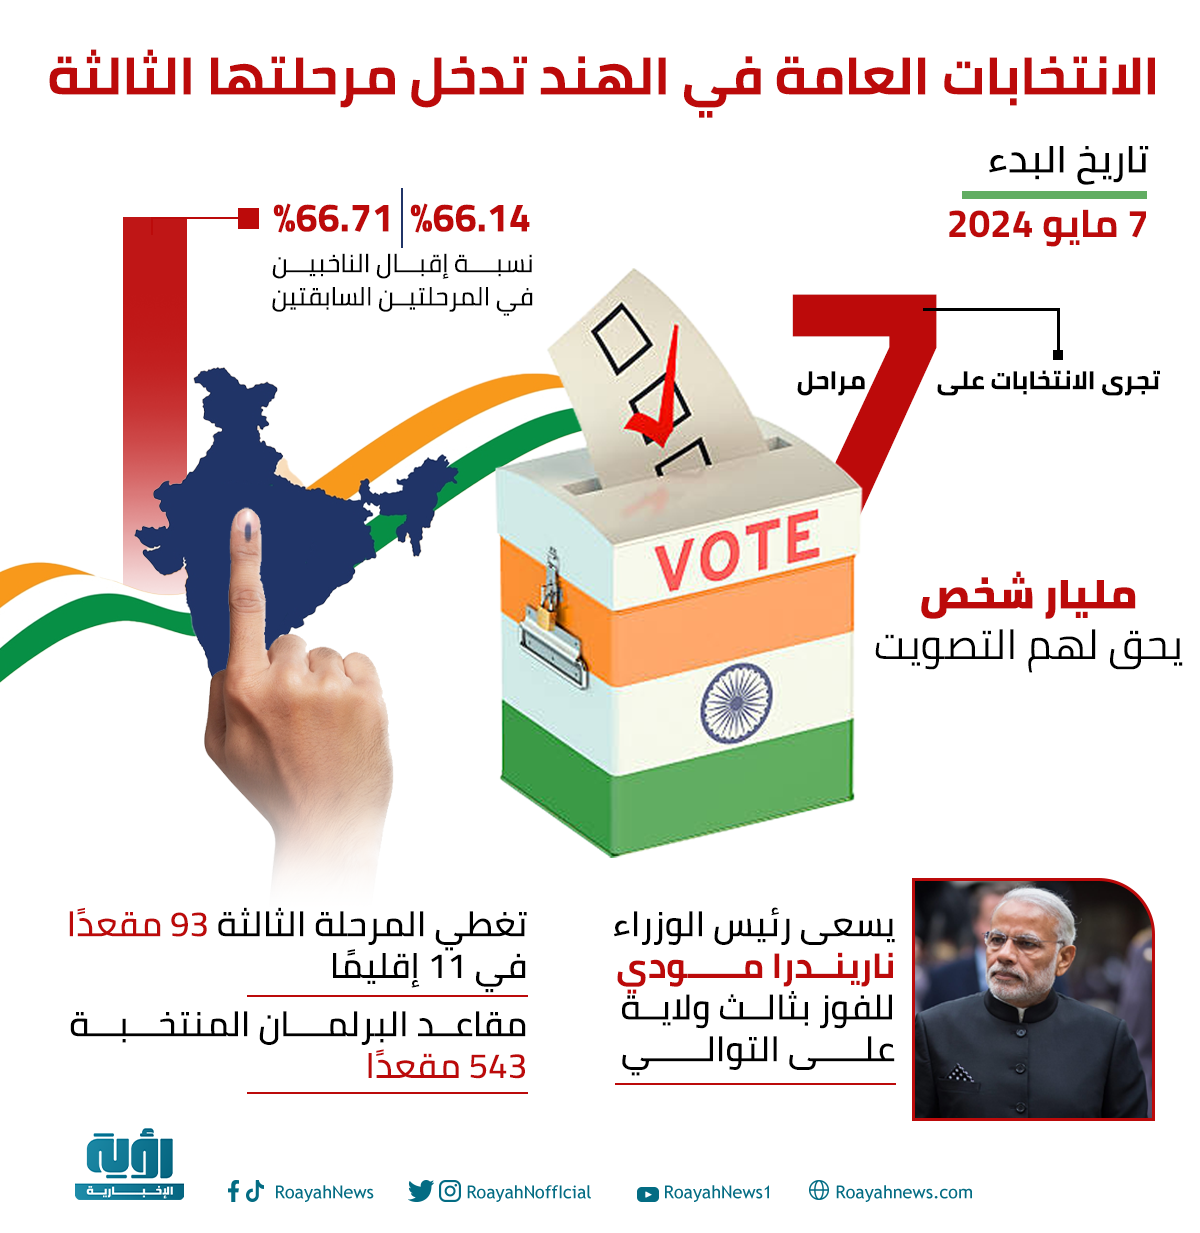 الانتخابات العامة في الهند تدخل مرحلتها الثالثة